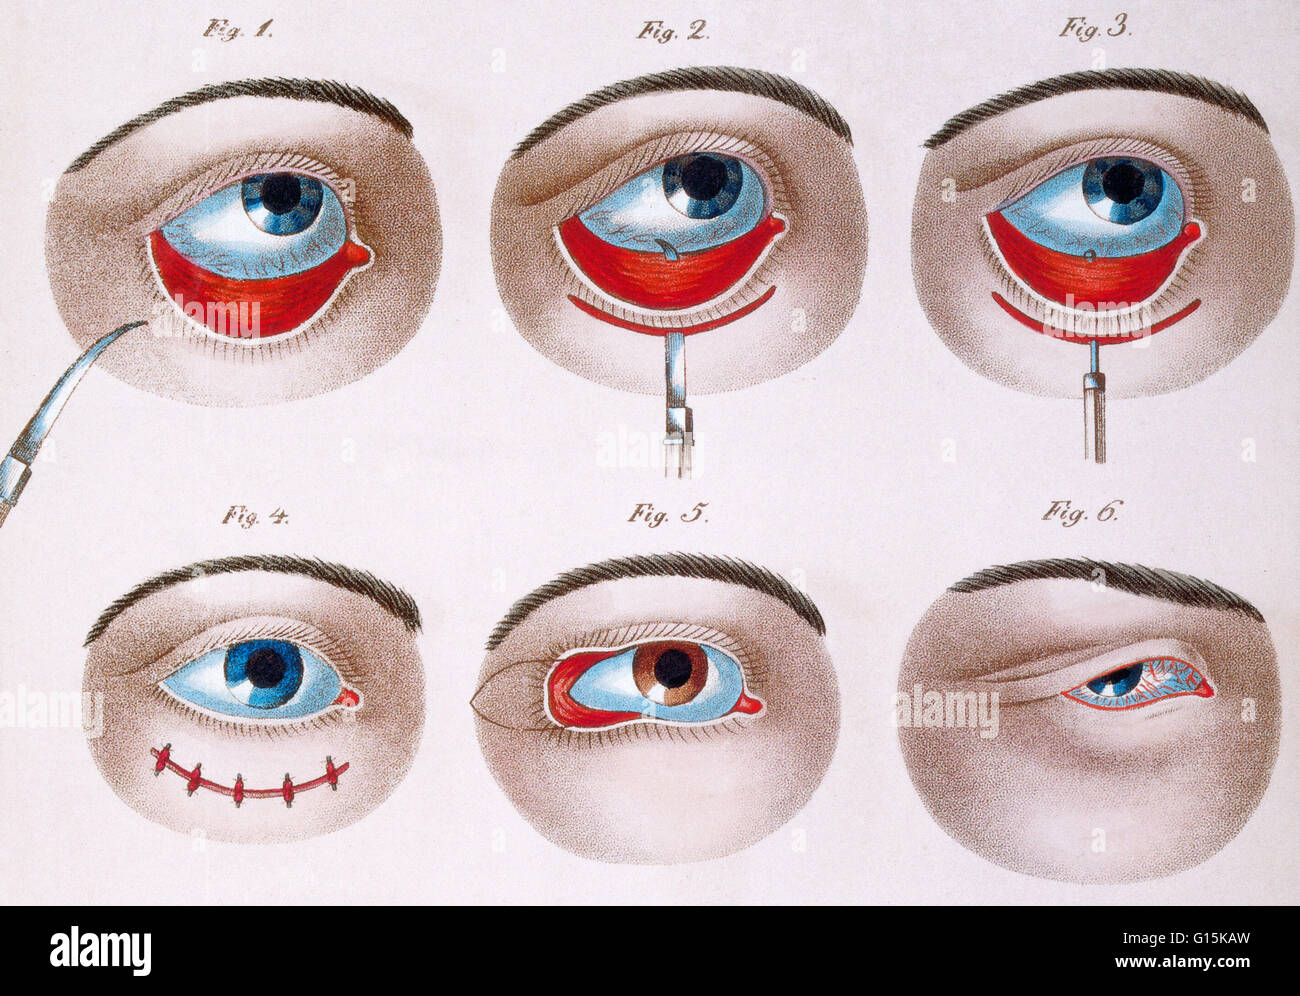 Darstellung des chirurgischen Eingriffs, eine faule untere Augenlid (Ptosis), c. 1830 zu korrigieren. Ptose ist eine hängende oder fallen von der oberen oder unteren Augenlid. Die herabhängenden möglicherweise schlimmer nach mehr, wach sein, wenn die einzelnen Muskeln müde sind. Dieses c Stockfoto